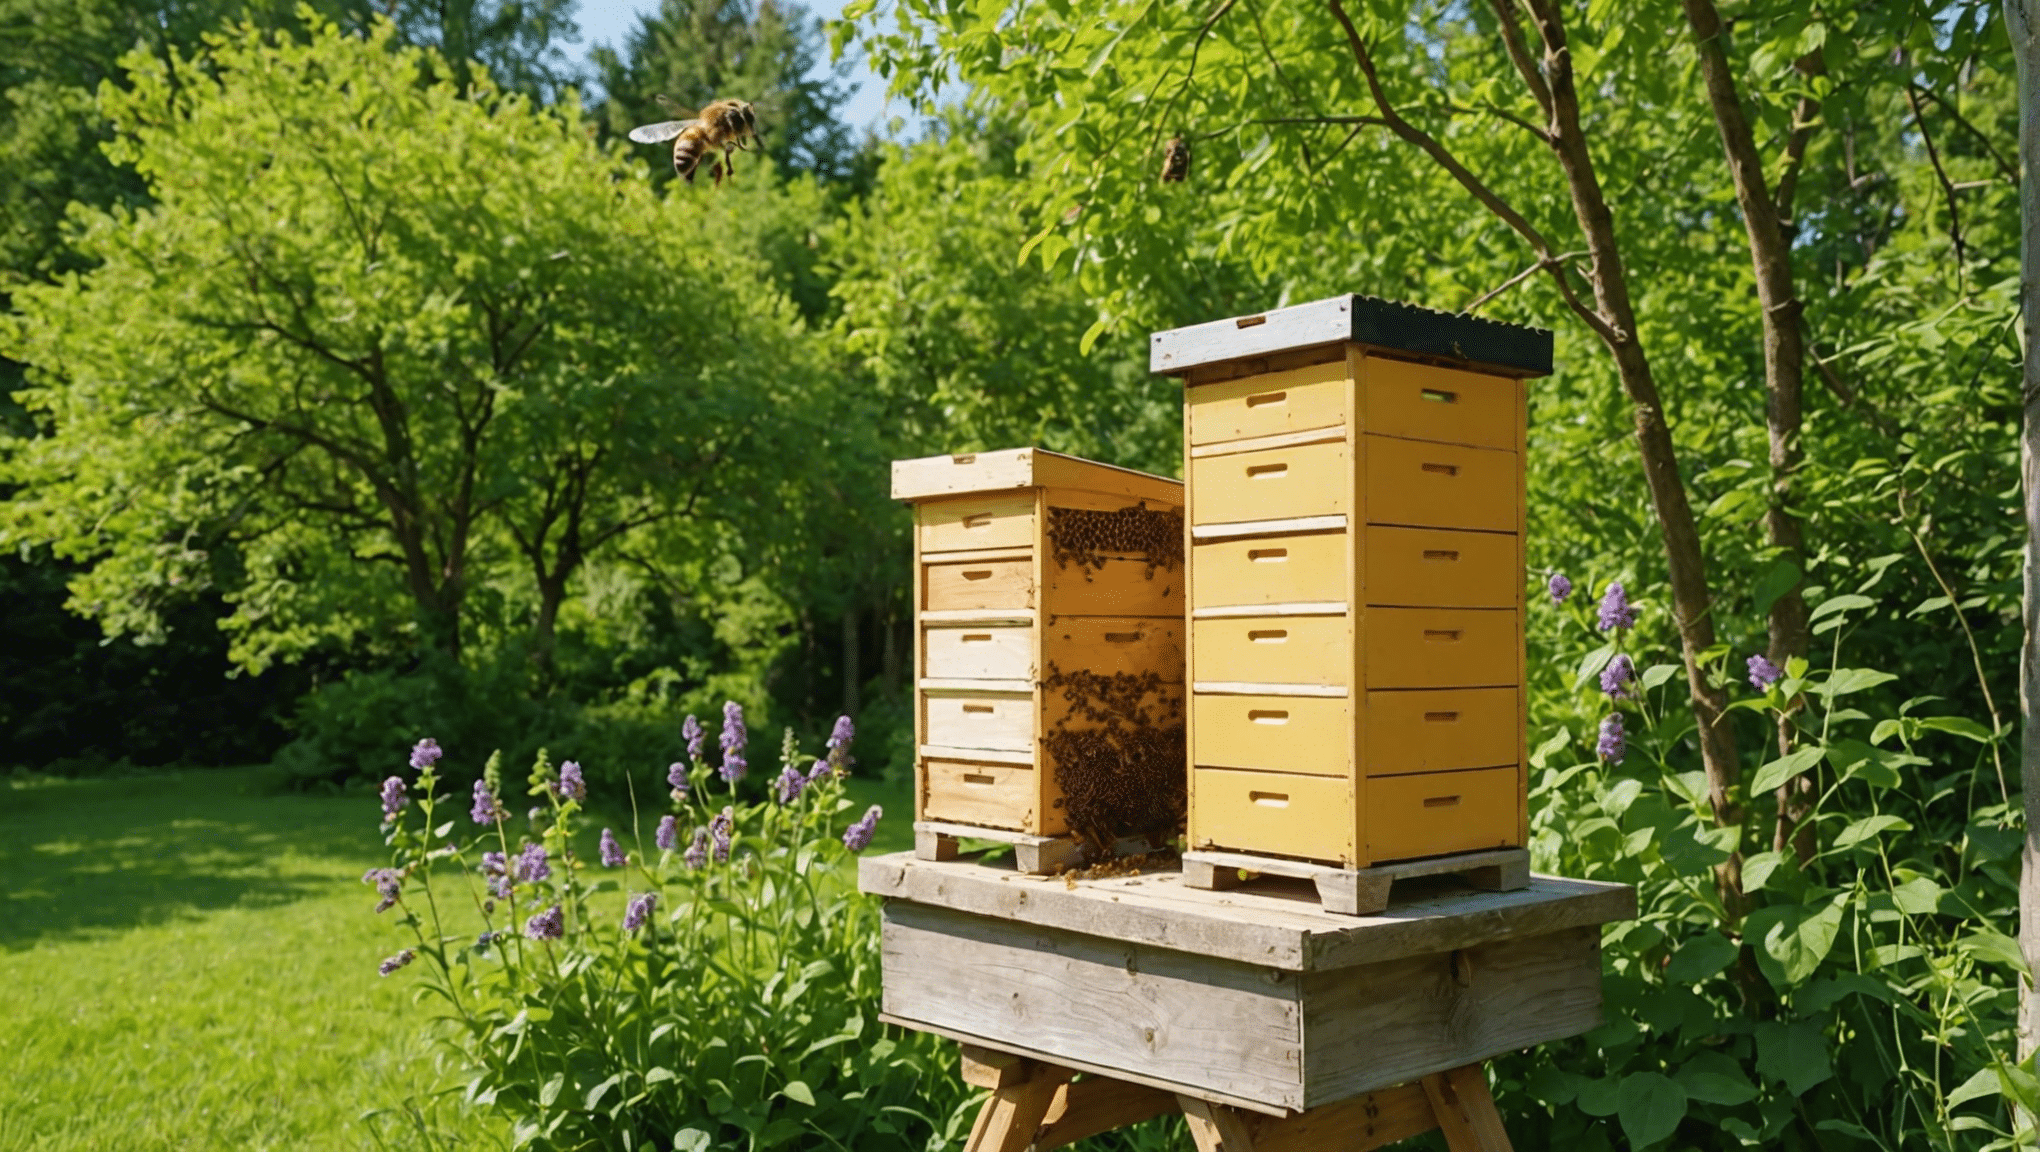 vše, co potřebujete vědět o přírodních včelích úlech, včetně způsobu jejich výroby, jejich výhod a péče o ně, najdete v tomto komplexním průvodci.